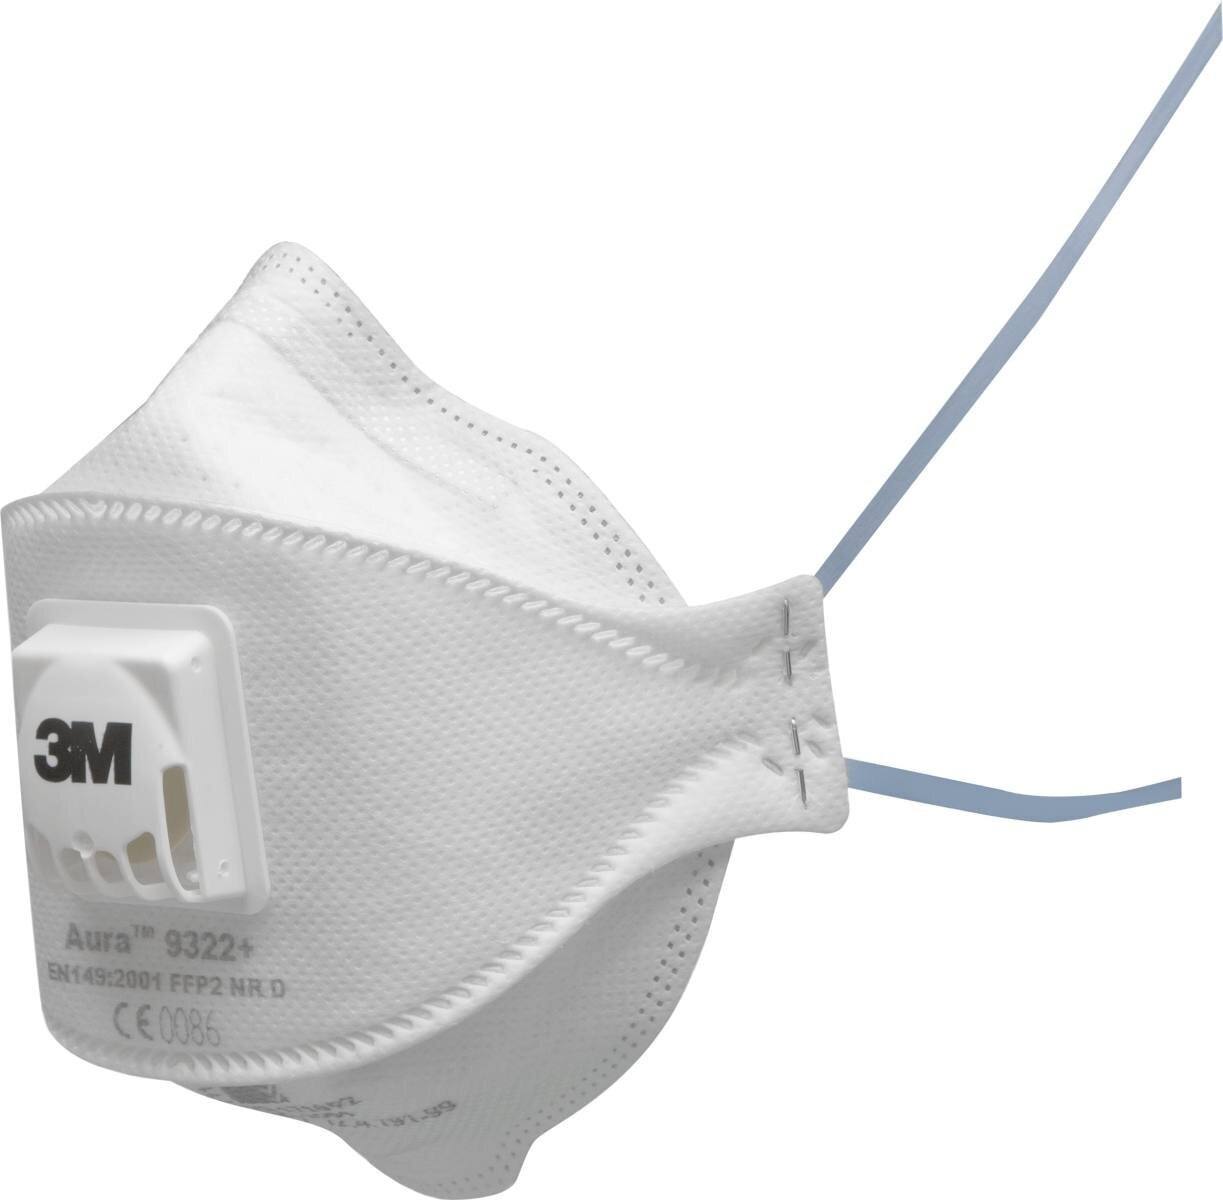 3M 9322 Aura Masque de protection respiratoire FFP2 avec valve d'expiration Cool-Flow, jusqu'à 10 fois la valeur limite (emballage individuel hygiénique)